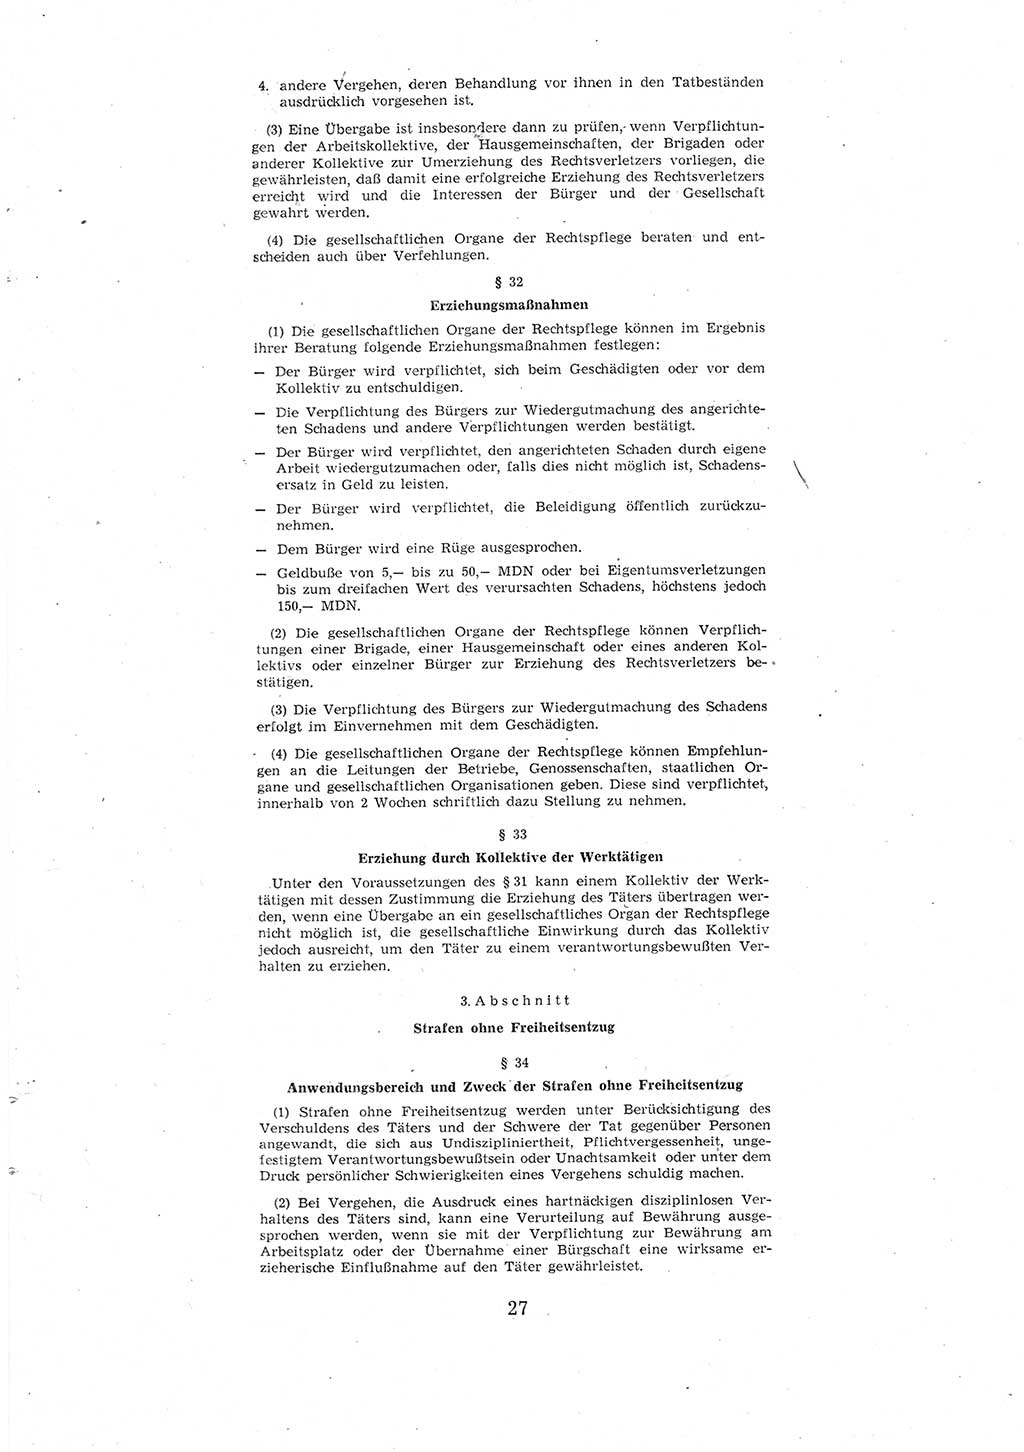 Entwurf des Strafgesetzbuches (StGB) der Deutschen Demokratischen Republik (DDR) 1967, Seite 27 (Entw. StGB DDR 1967, S. 27)